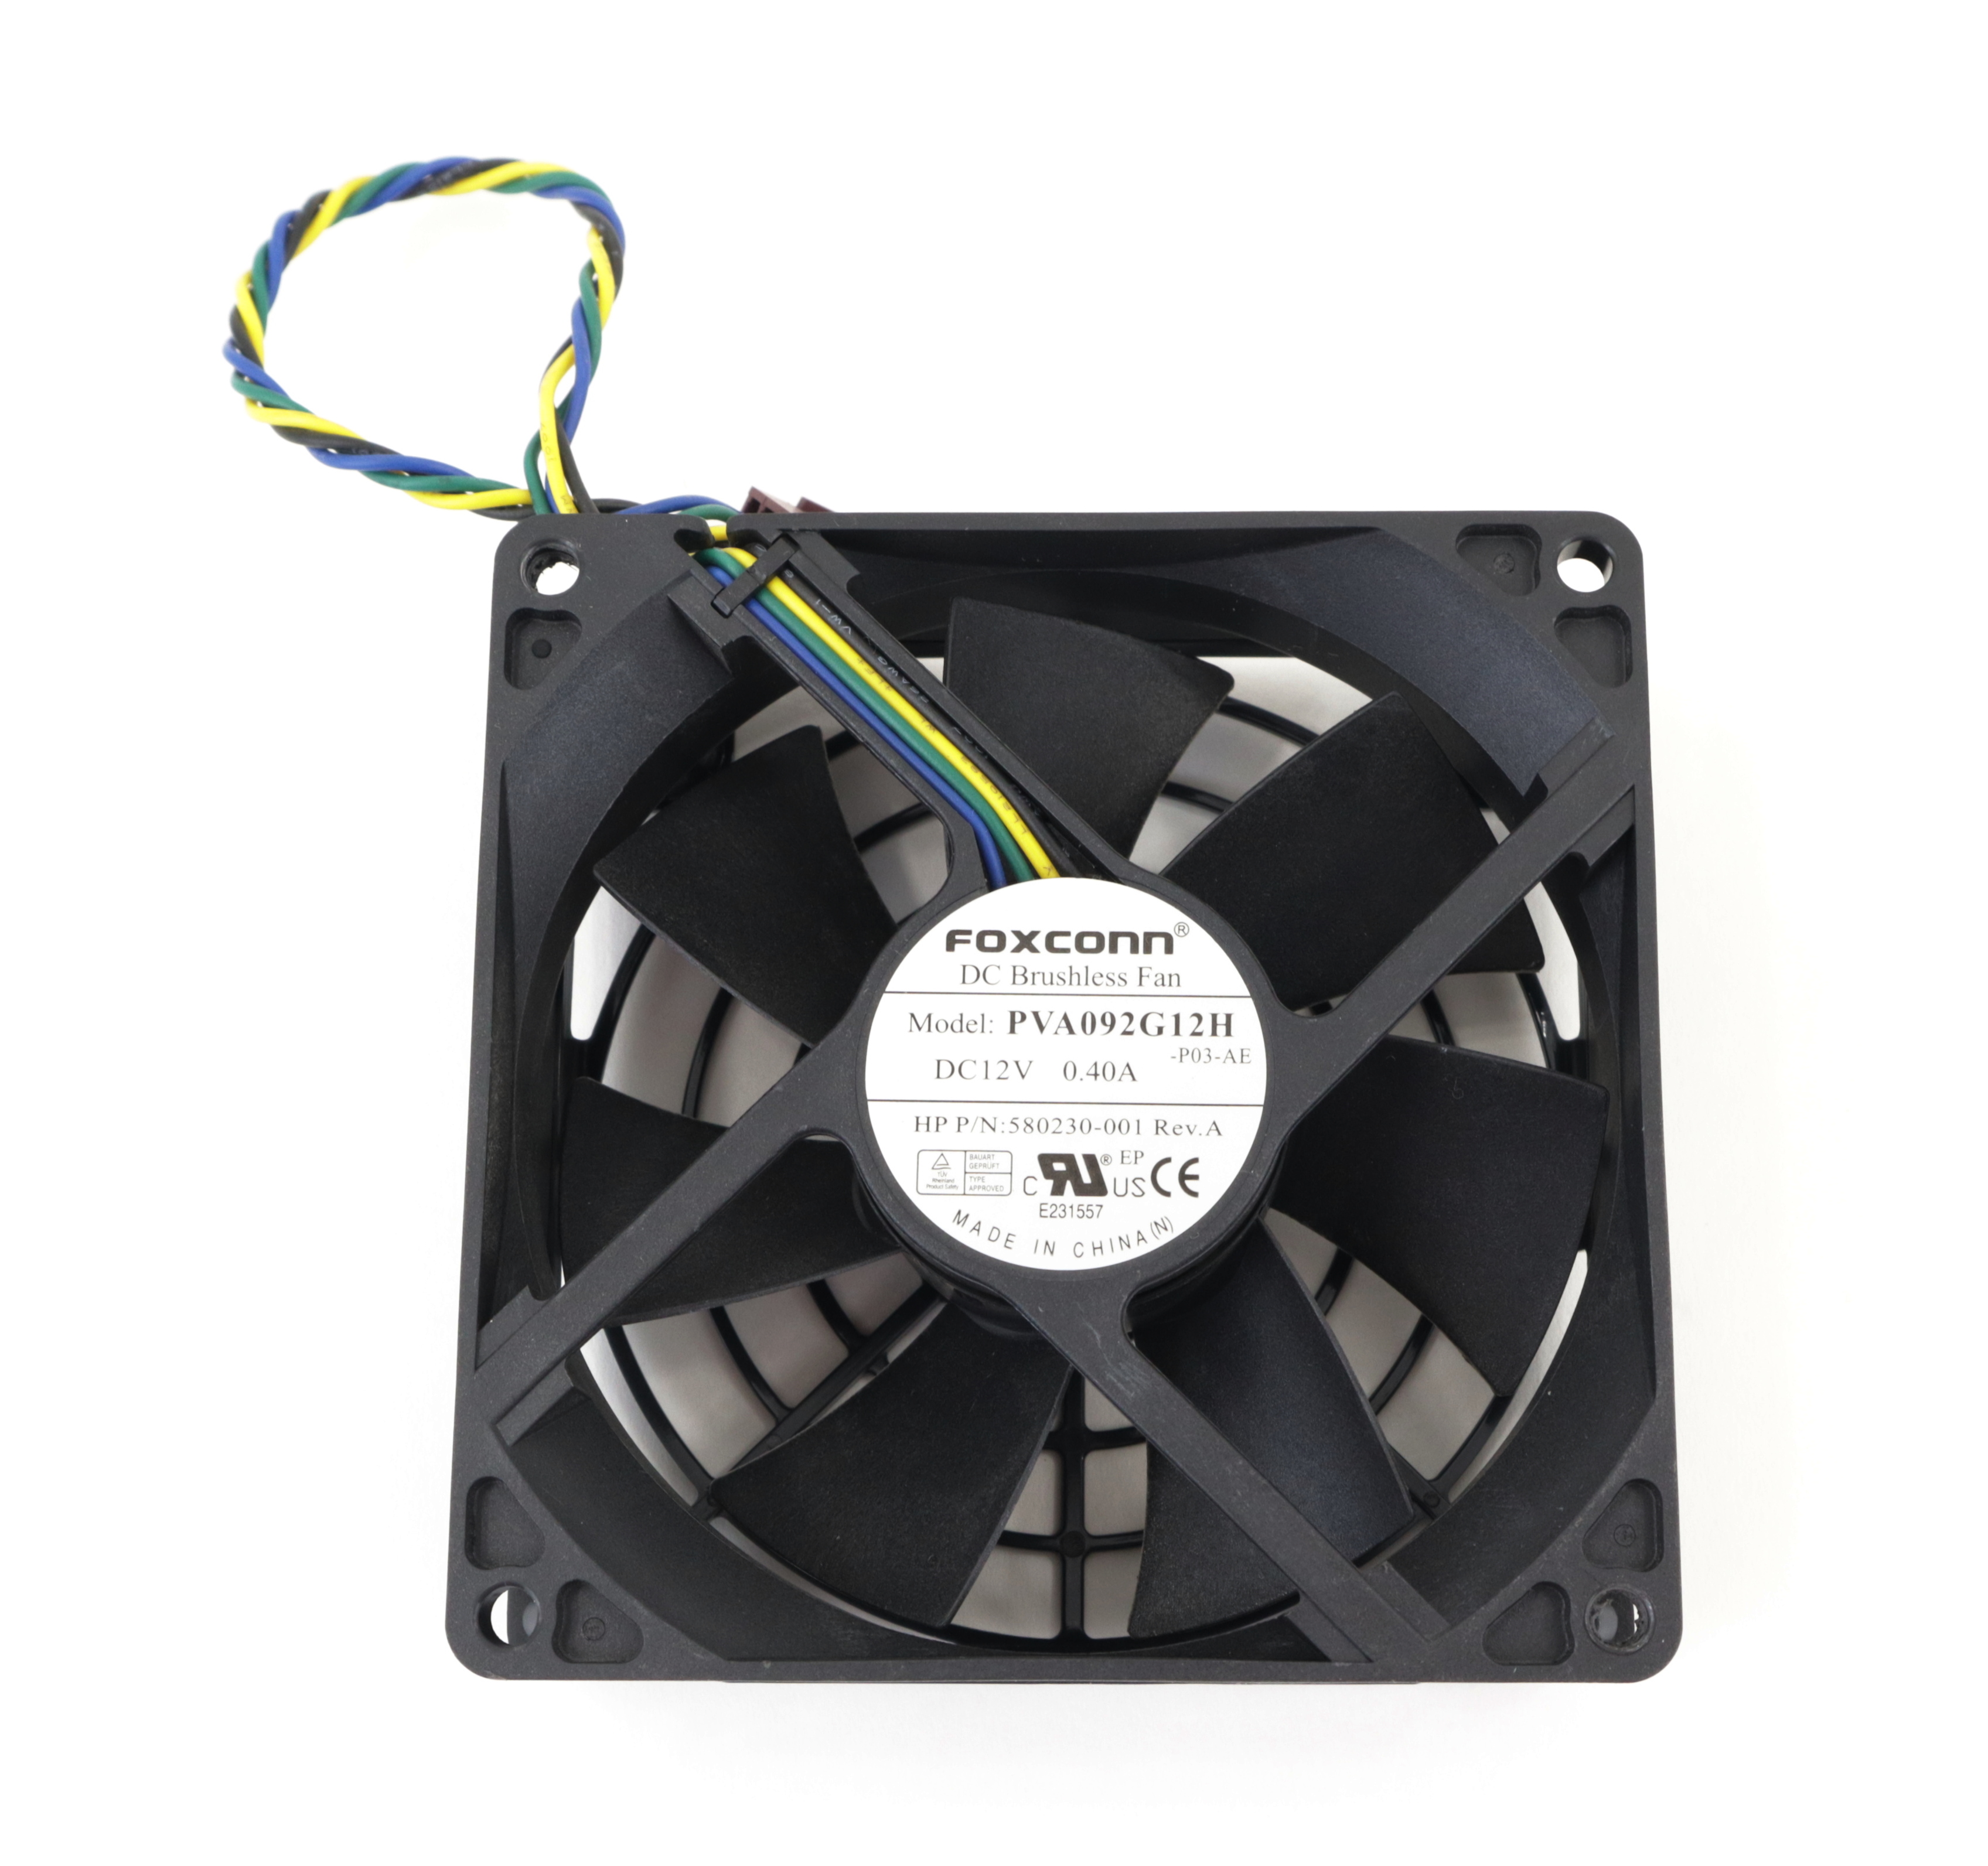 HP Foxconn Cooling Fan PVA092G12H-P03-AE DC 12V 0.4A 92mm 4pin 4-Wire 580230-001